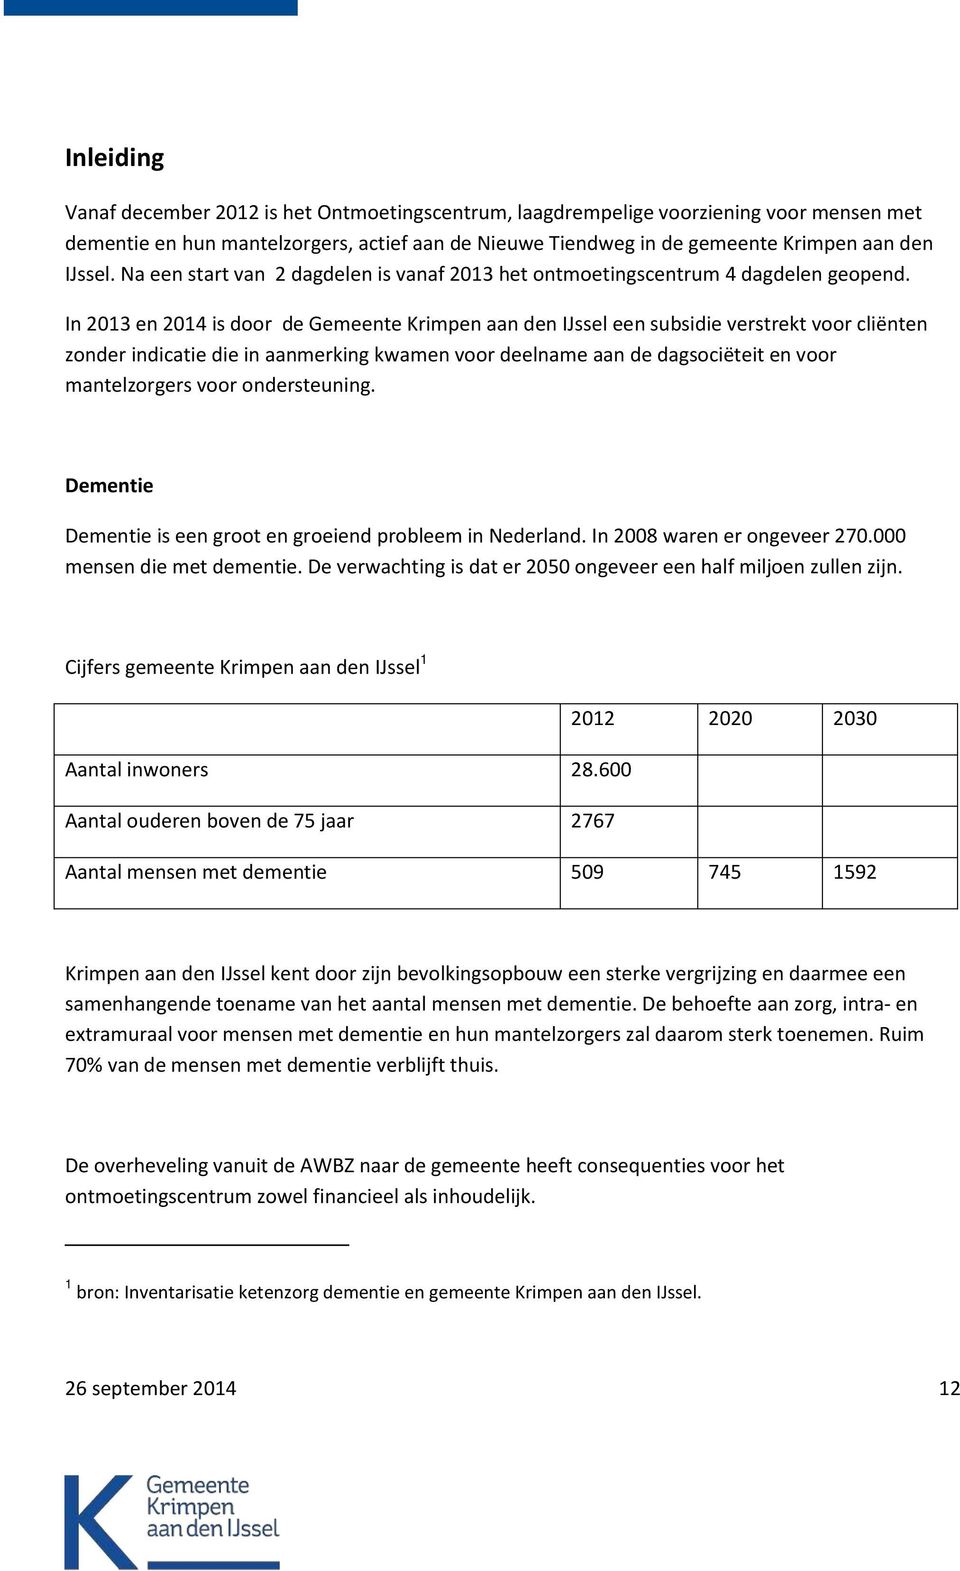 In 2013 en 2014 is door de Gemeente Krimpen aan den IJssel een subsidie verstrekt voor cliënten zonder indicatie die in aanmerking kwamen voor deelname aan de dagsociëteit en voor mantelzorgers voor